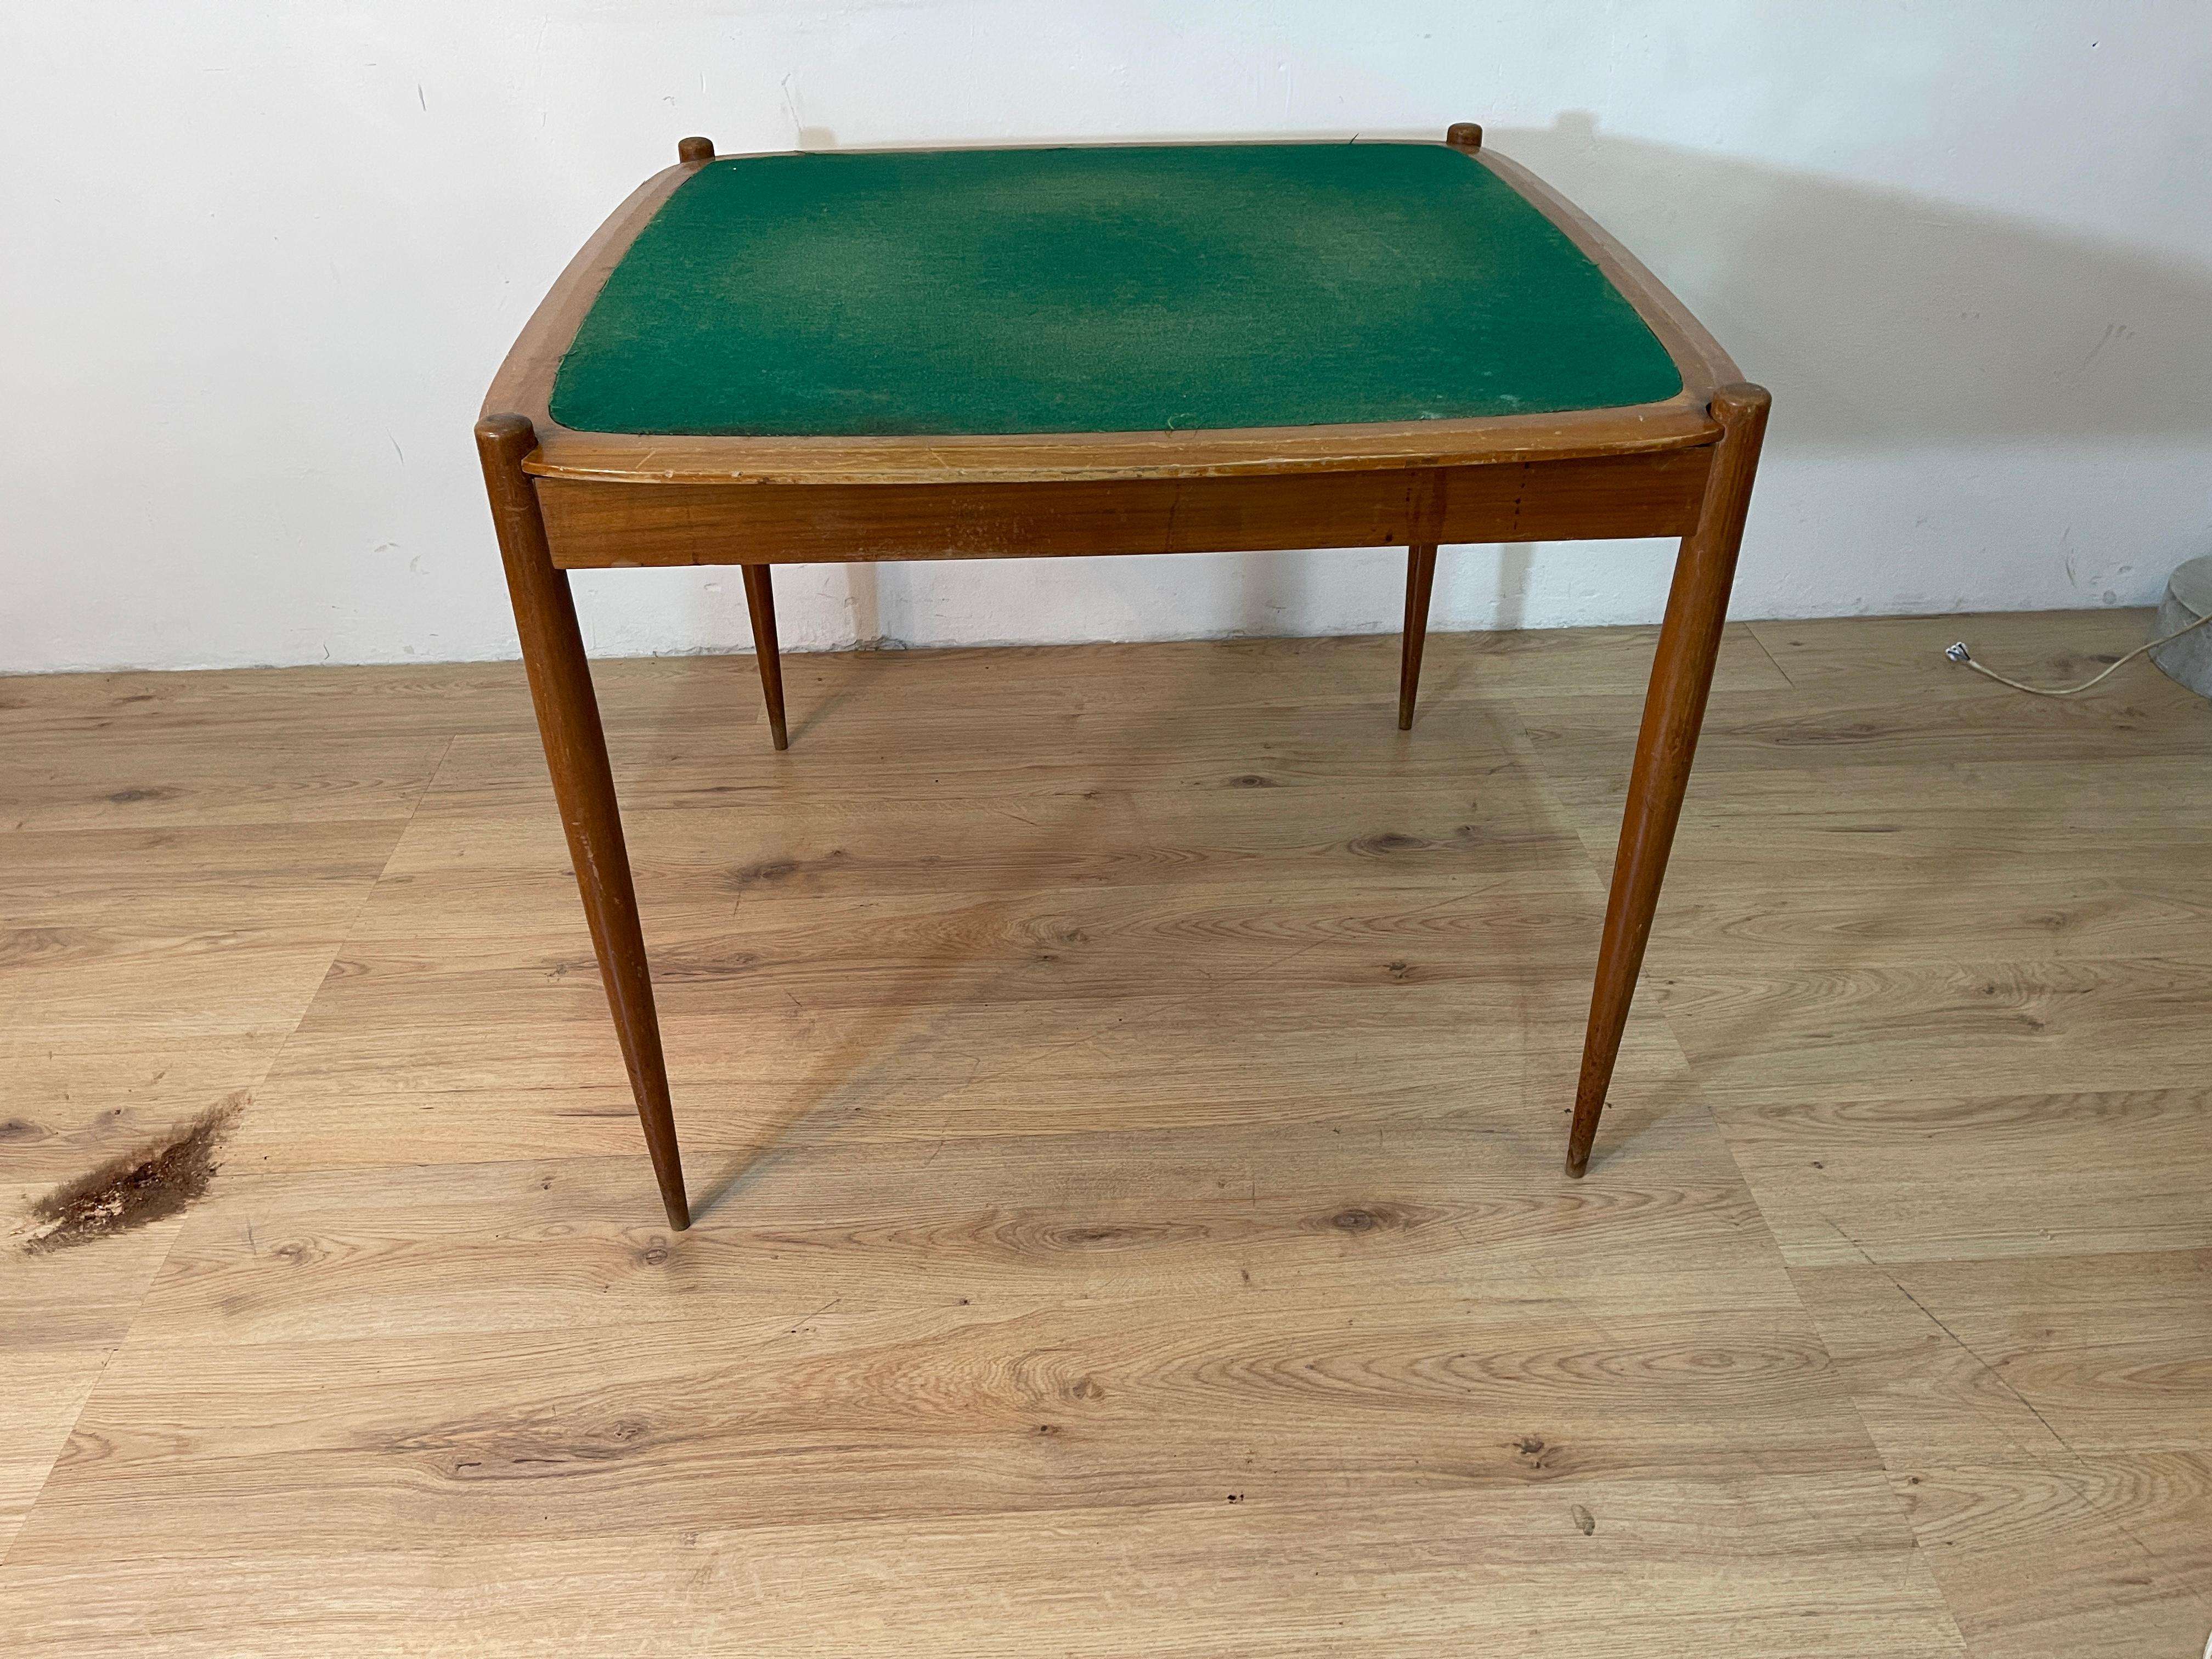 Spieltisch mit wendbarer Platte, eine Seite mit grünem Stoff für das Spiel und ein Teil mit Holzoberfläche als normaler Esszimmertisch. Der Tisch ist ein berühmtes Werk des größten italienischen Designers Giò Ponti, der ihn für das ebenso berühmte